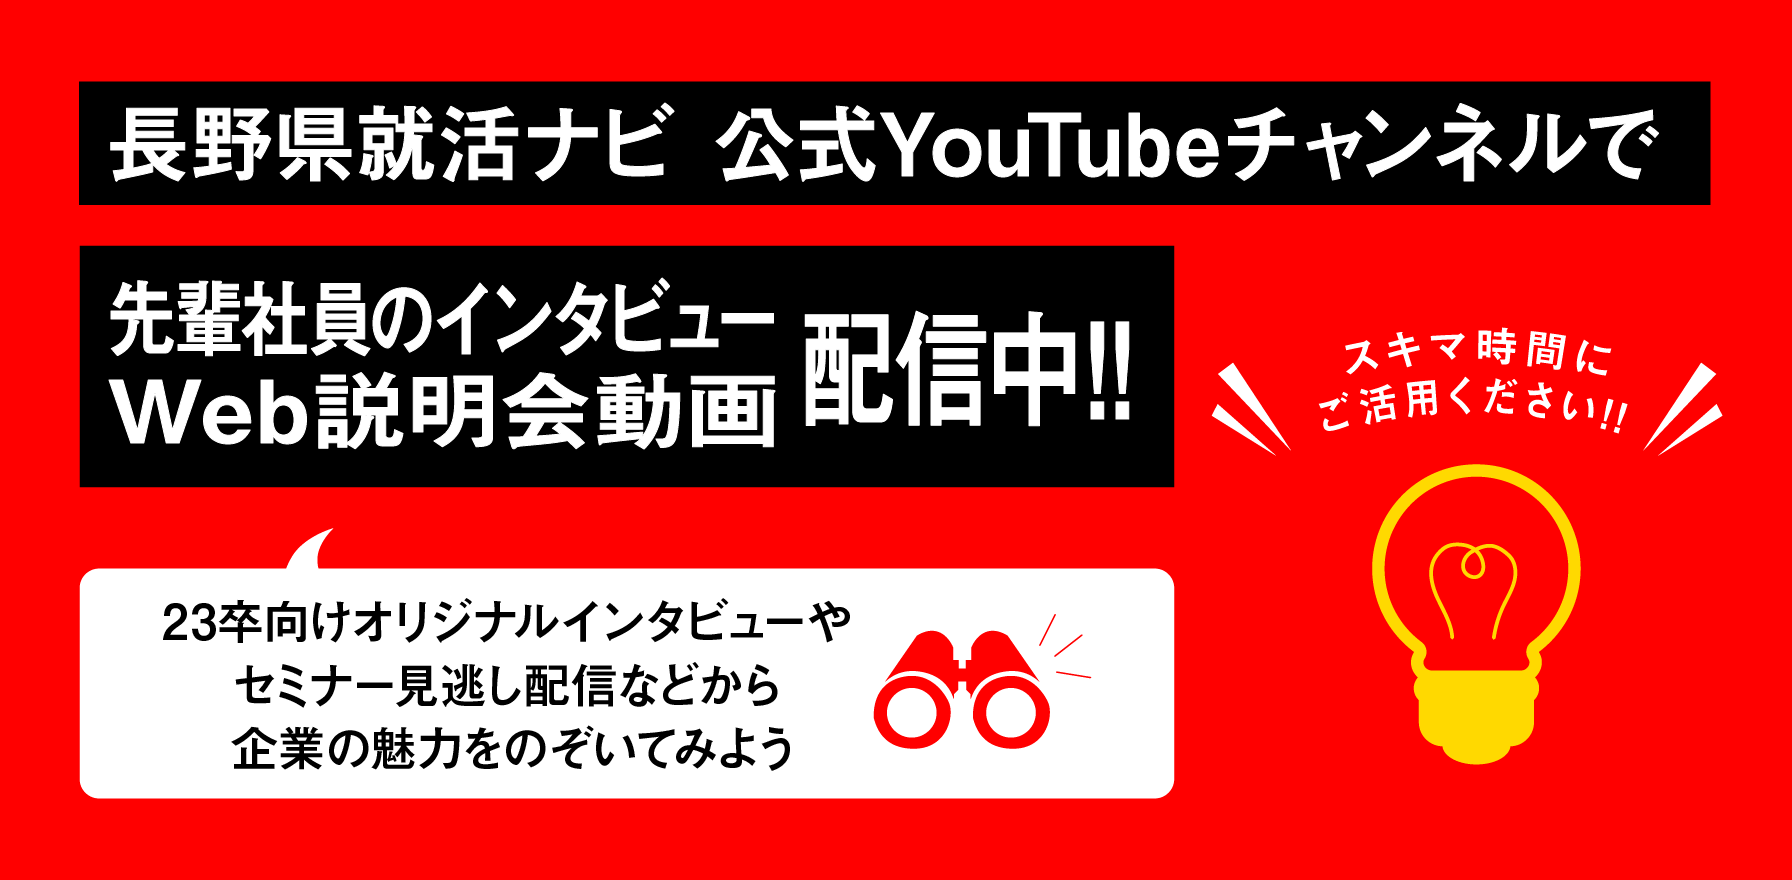 長野県就活ナビ 公式YouTubeチャンネルで 企業紹介PR動画配信中！！